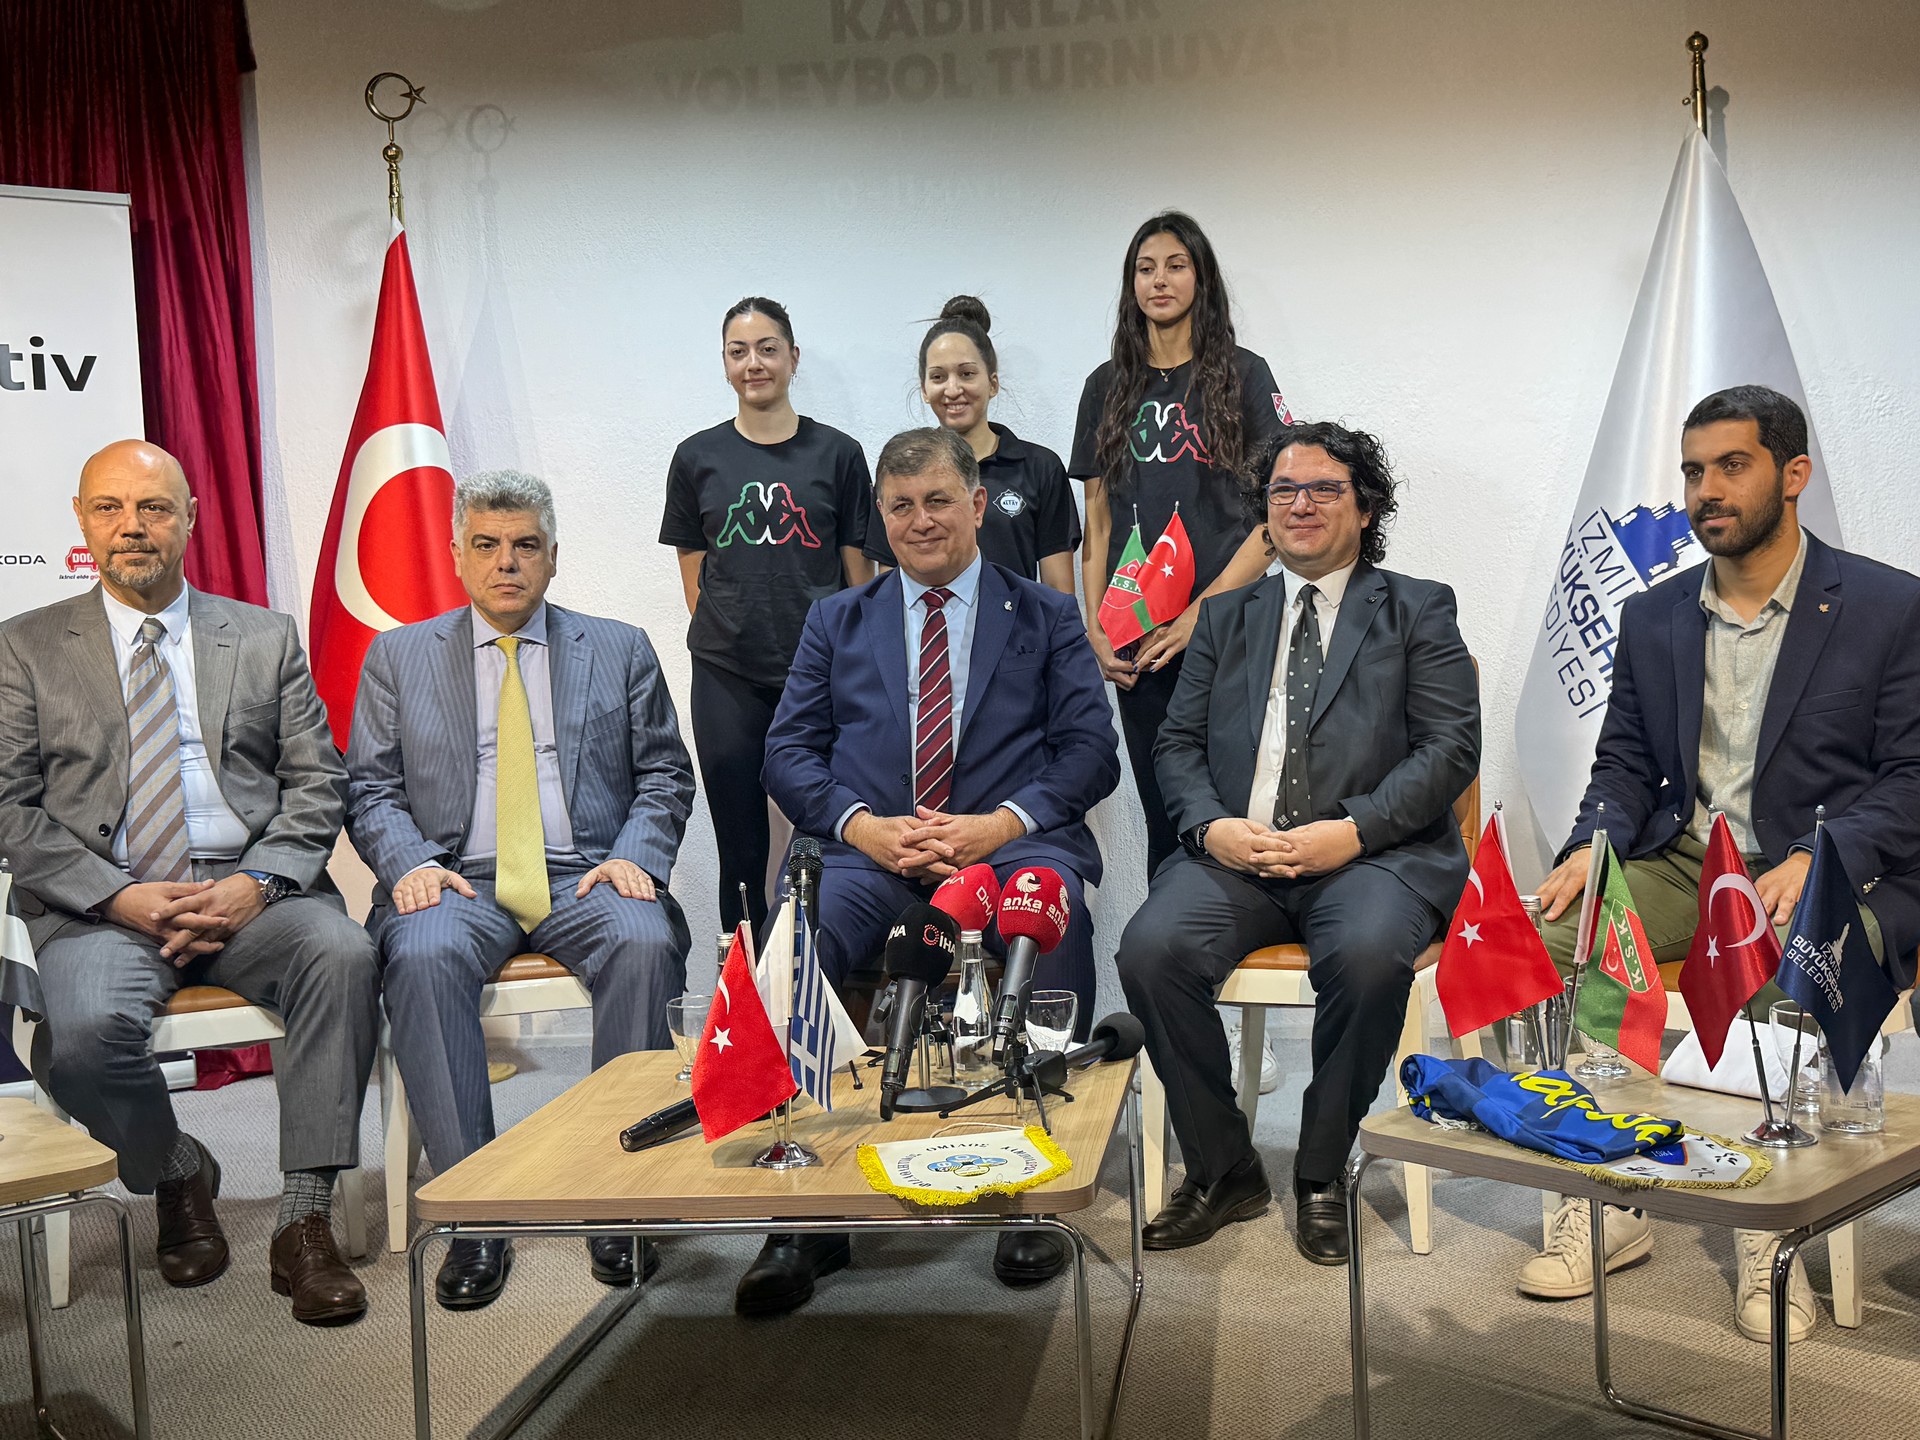 Sakız Adası'nda düzenlenecek voleybol turnuvasının tanıtım toplantısı İzmir'de yapıldı